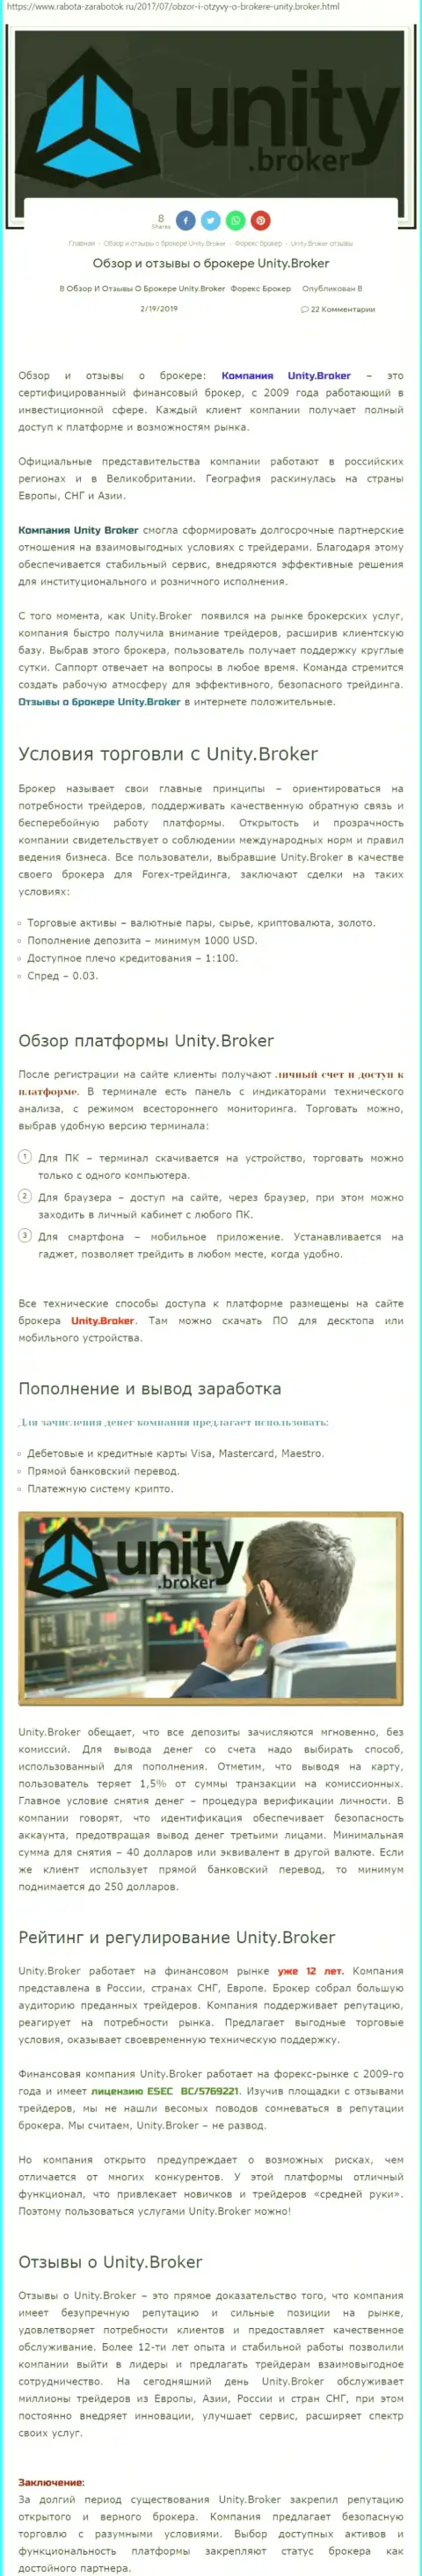 Обзорная информация форекс дилера Юнити Брокер на онлайн-сервисе Rabota-Zarabotok Ru